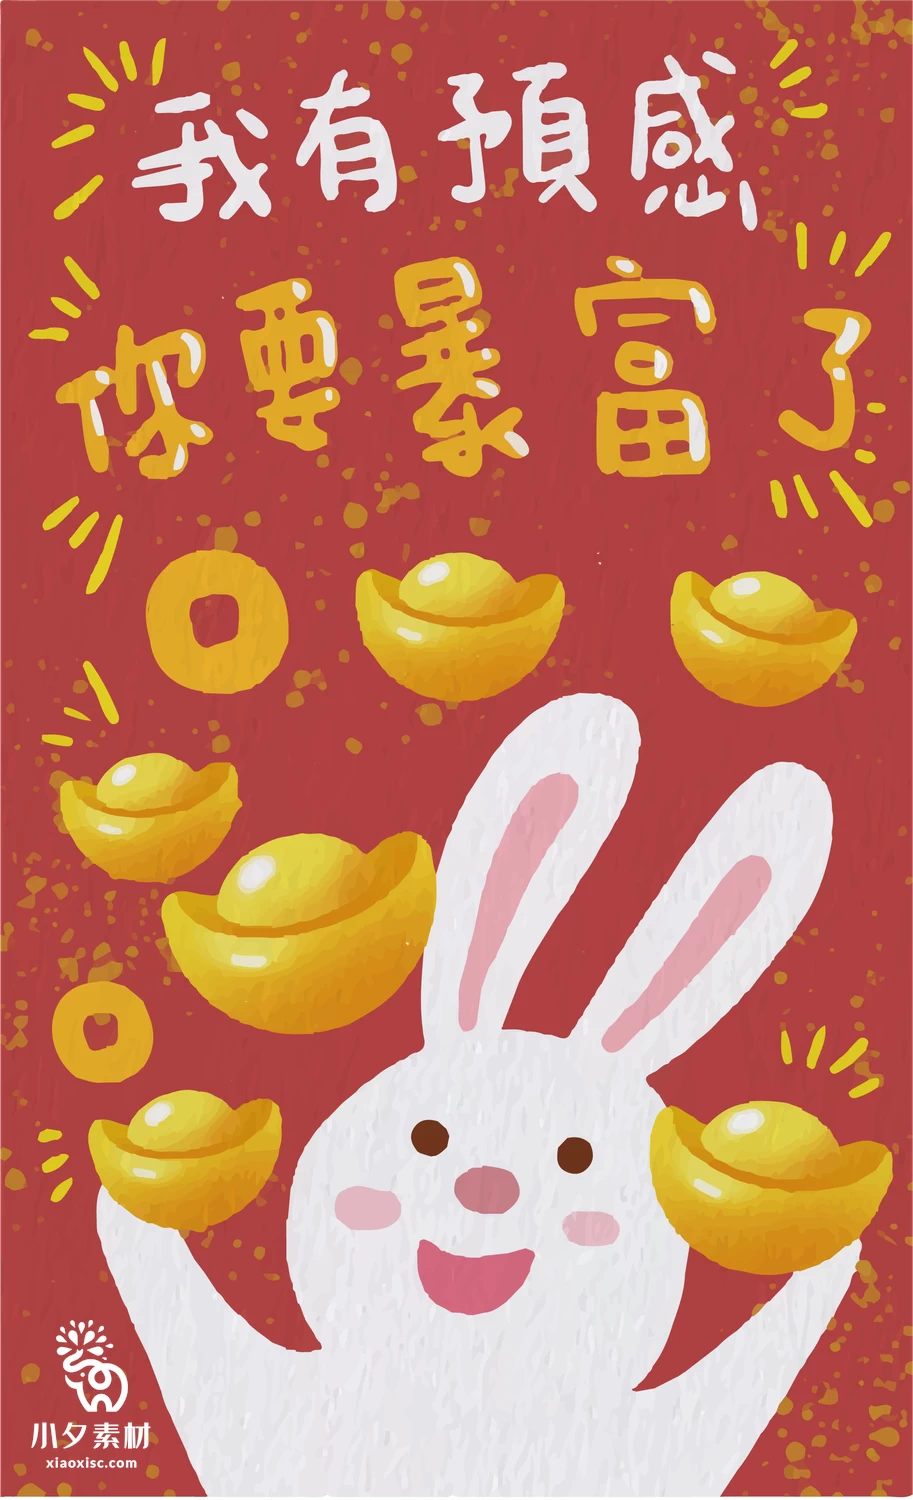 2023年兔年大吉新年红色喜庆好运暴富图案创意海报AI矢量设计素材【013】